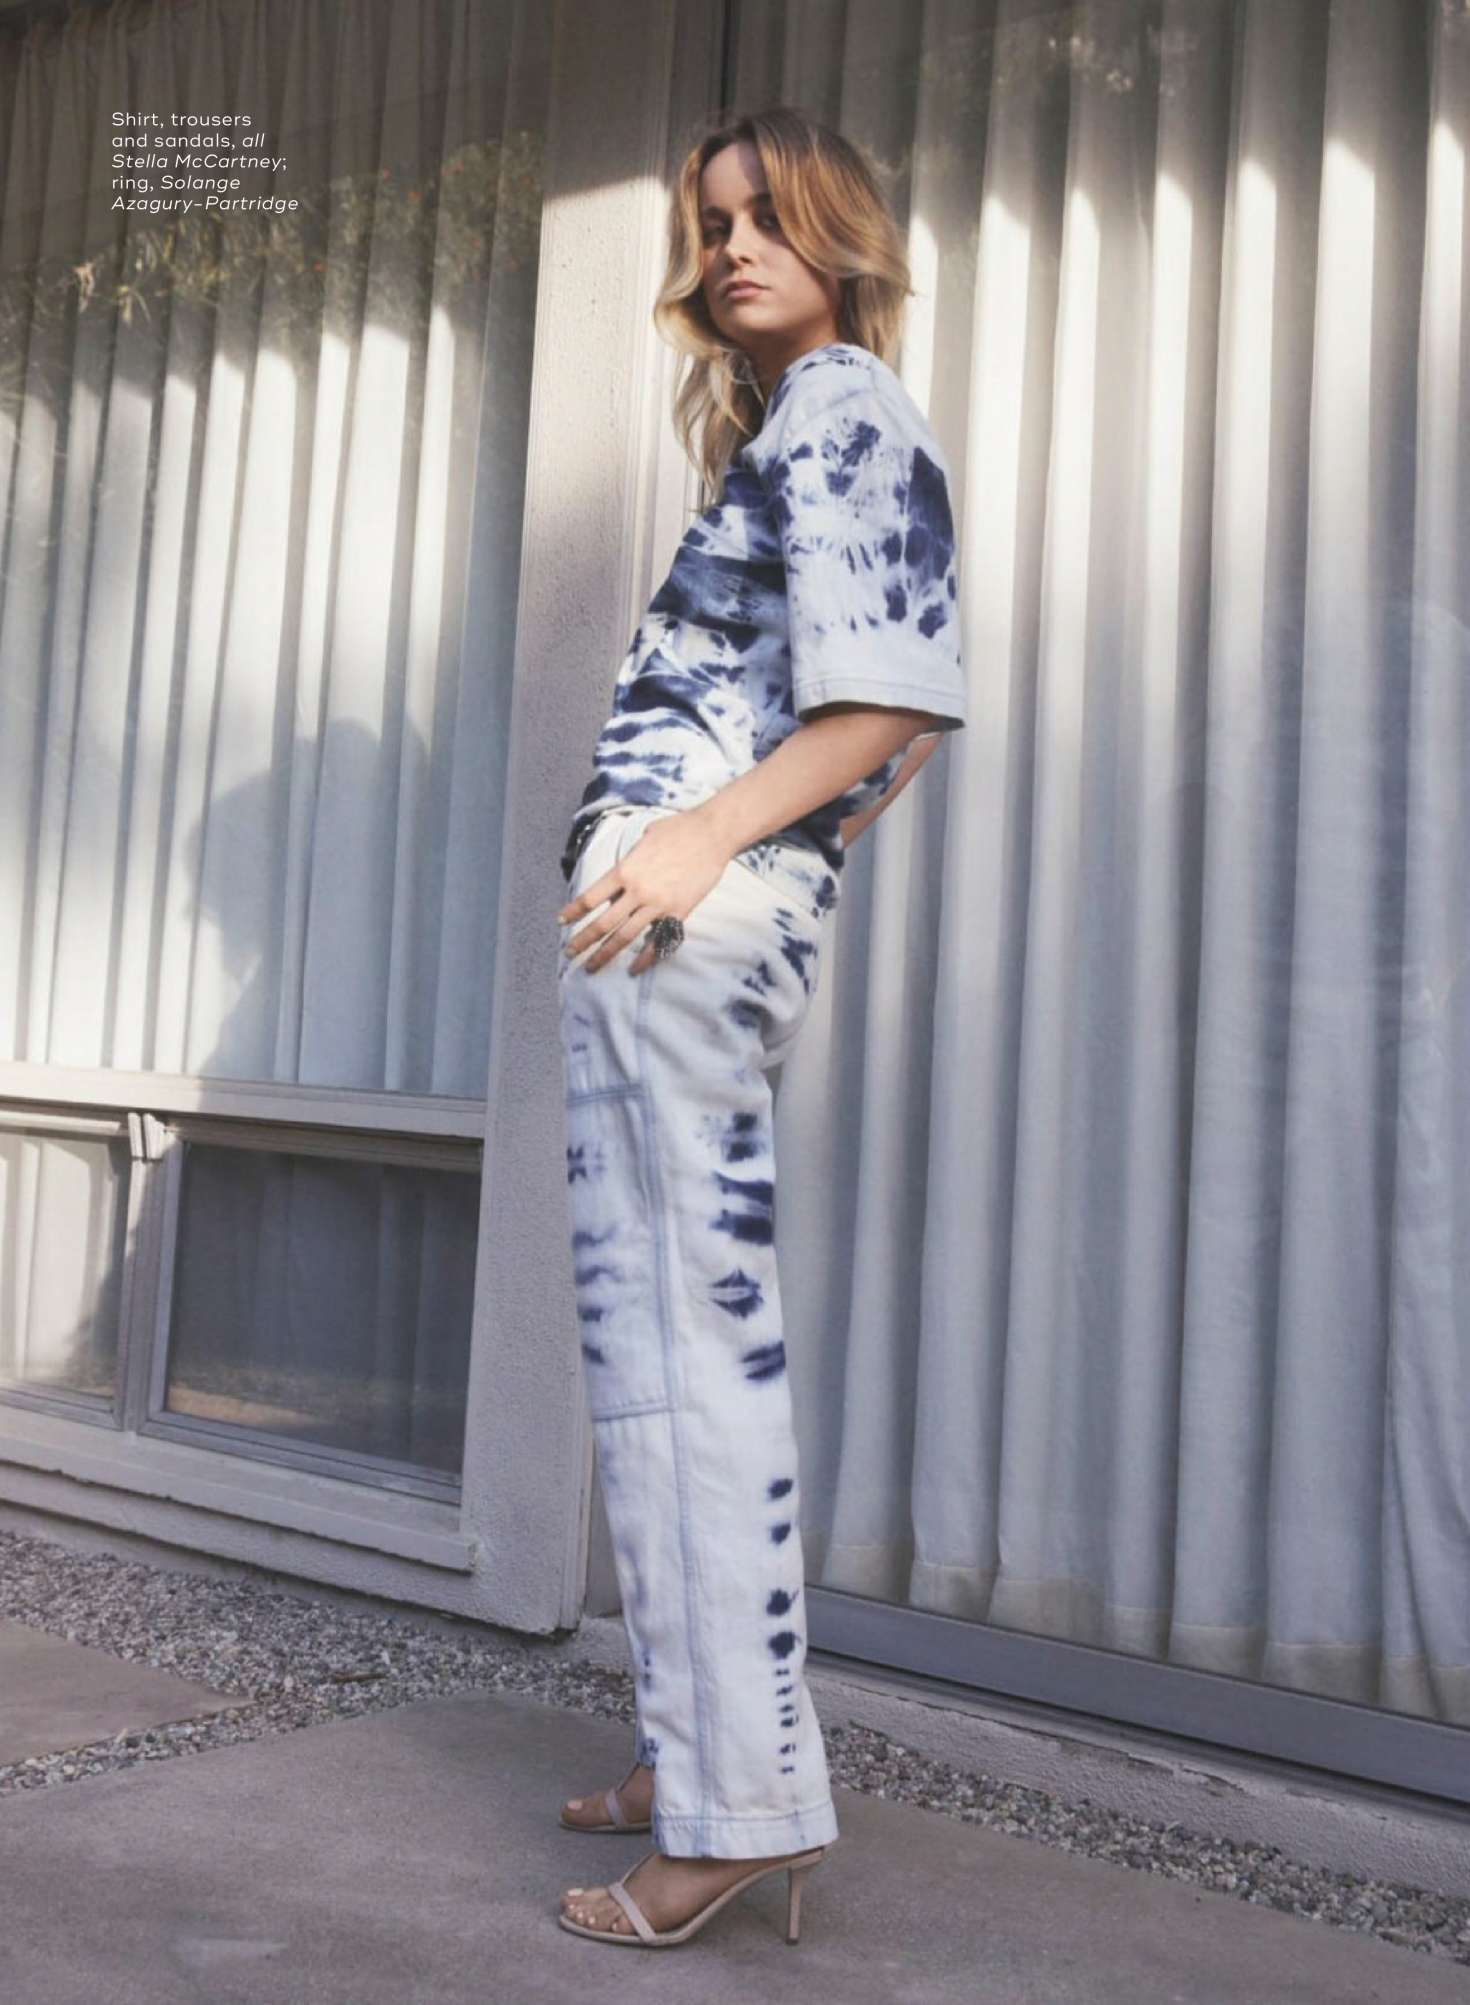 Brie Larson â€“ Marie Claire UK Magazine (March 2019)